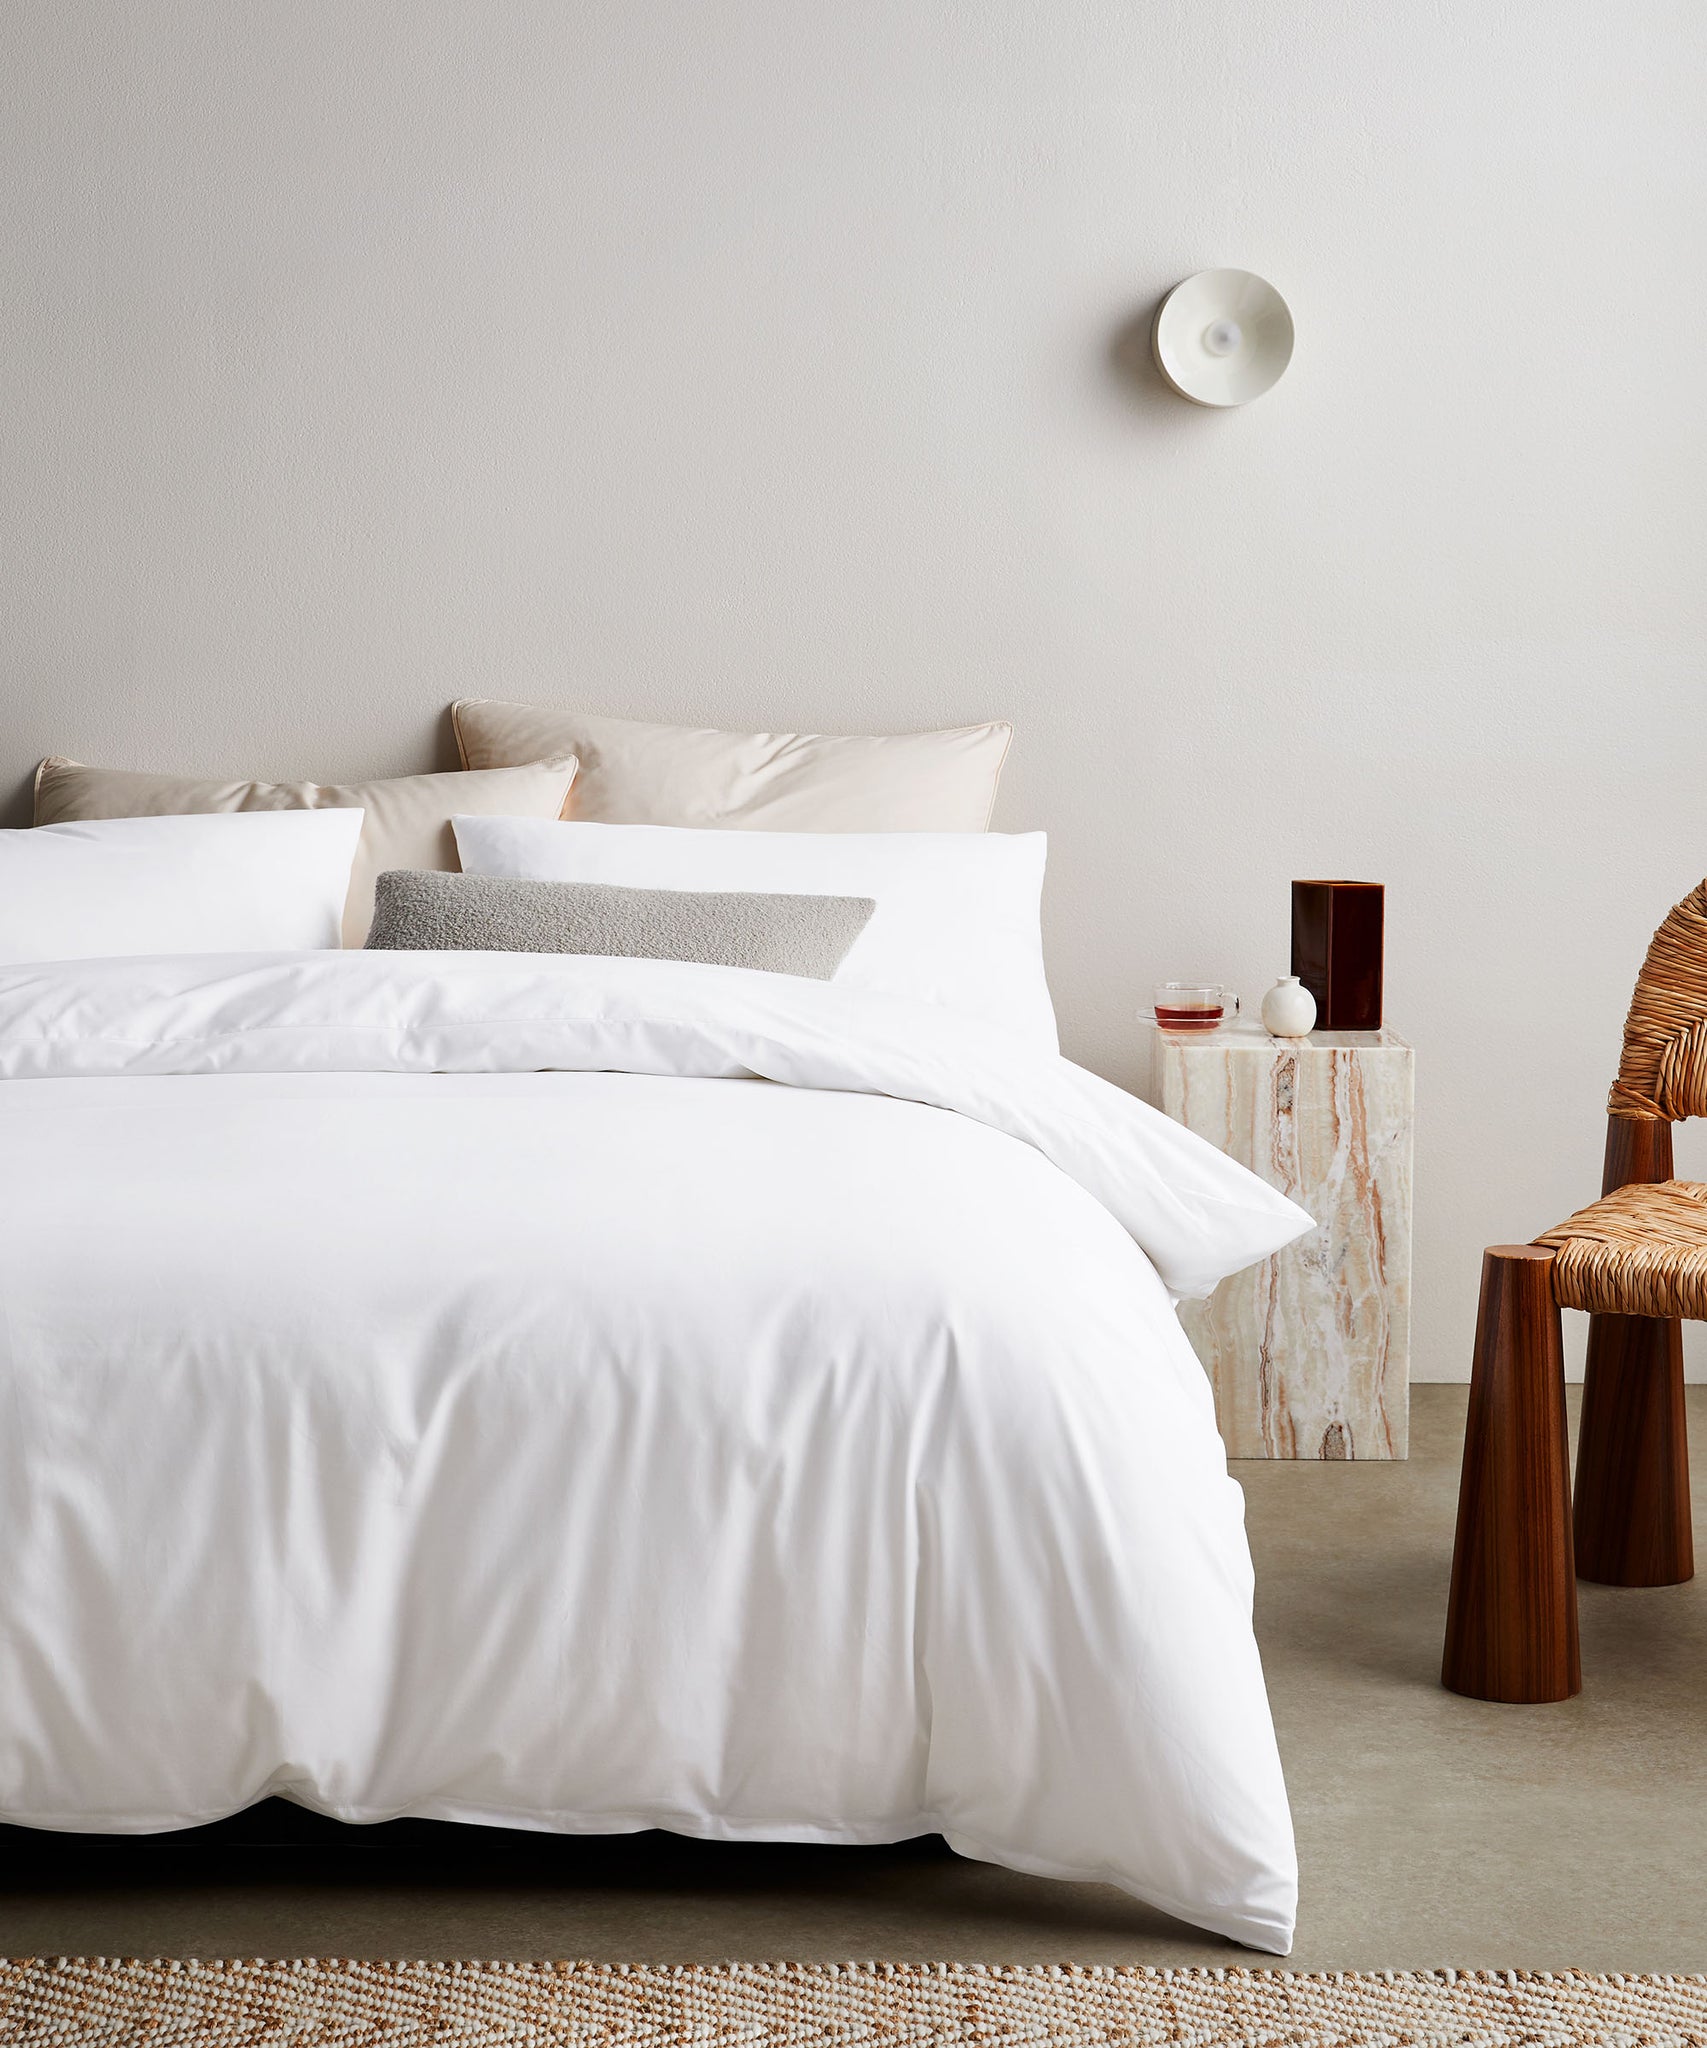 White bed linen tencel minimalist bedroom